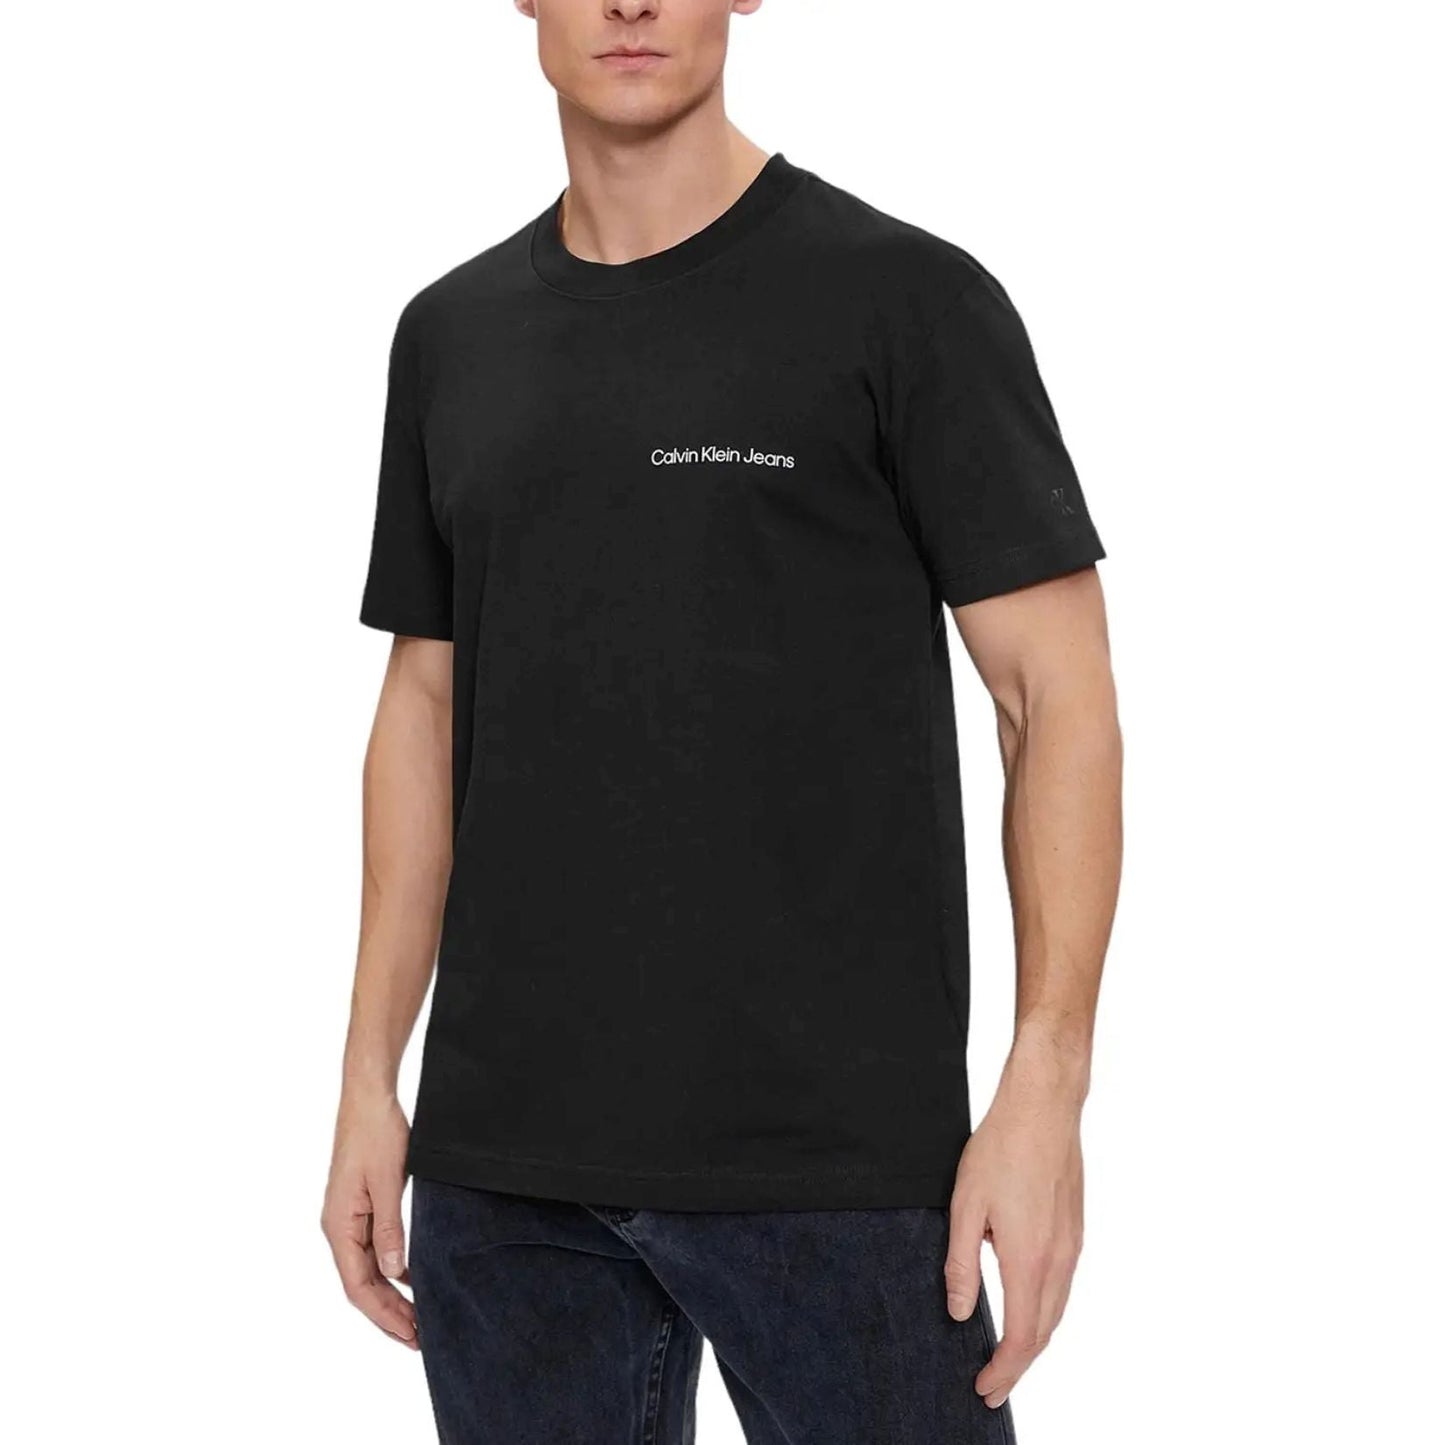 CALVIN KLEIN JEANS marškinėliai trumpomis rankovėmis vyrams, Juoda, S/s t-shirt